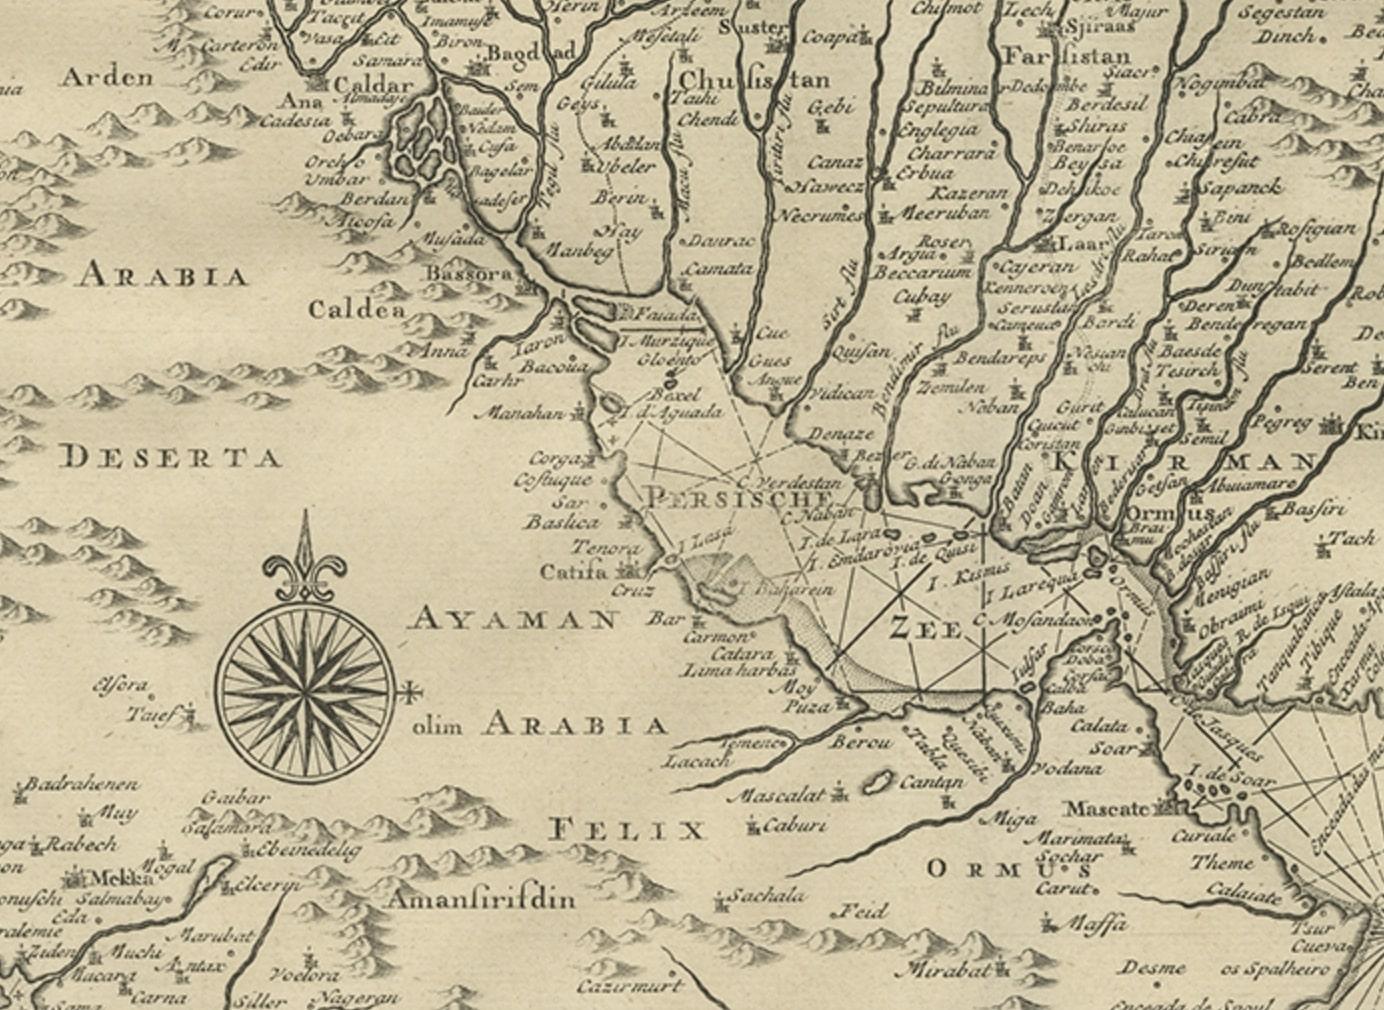 Carte ancienne de la Perse. Elle s'étend du golfe de Suez vers l'est jusqu'à Ahmedabad (Amadabad) dans l'ouest de l'Inde actuelle. 

Cette carte, centrée sur la Perse, inclut la mer Caspienne et une partie de la péninsule arabique. Cette estampe